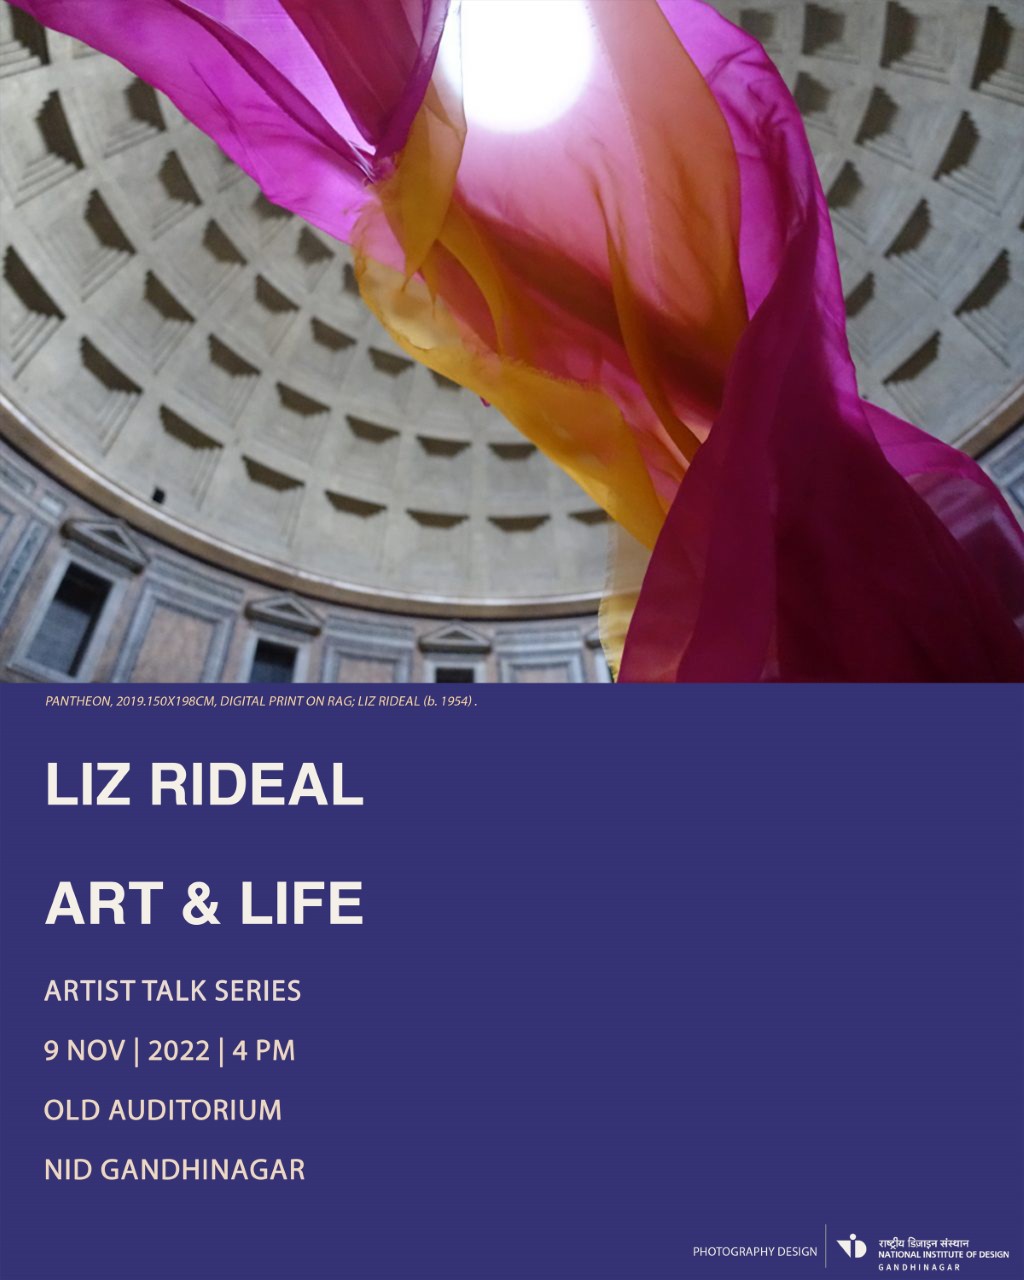 Poster: Liz Rideal's Art & Life Talk, NID Gandhinagar, November 2022